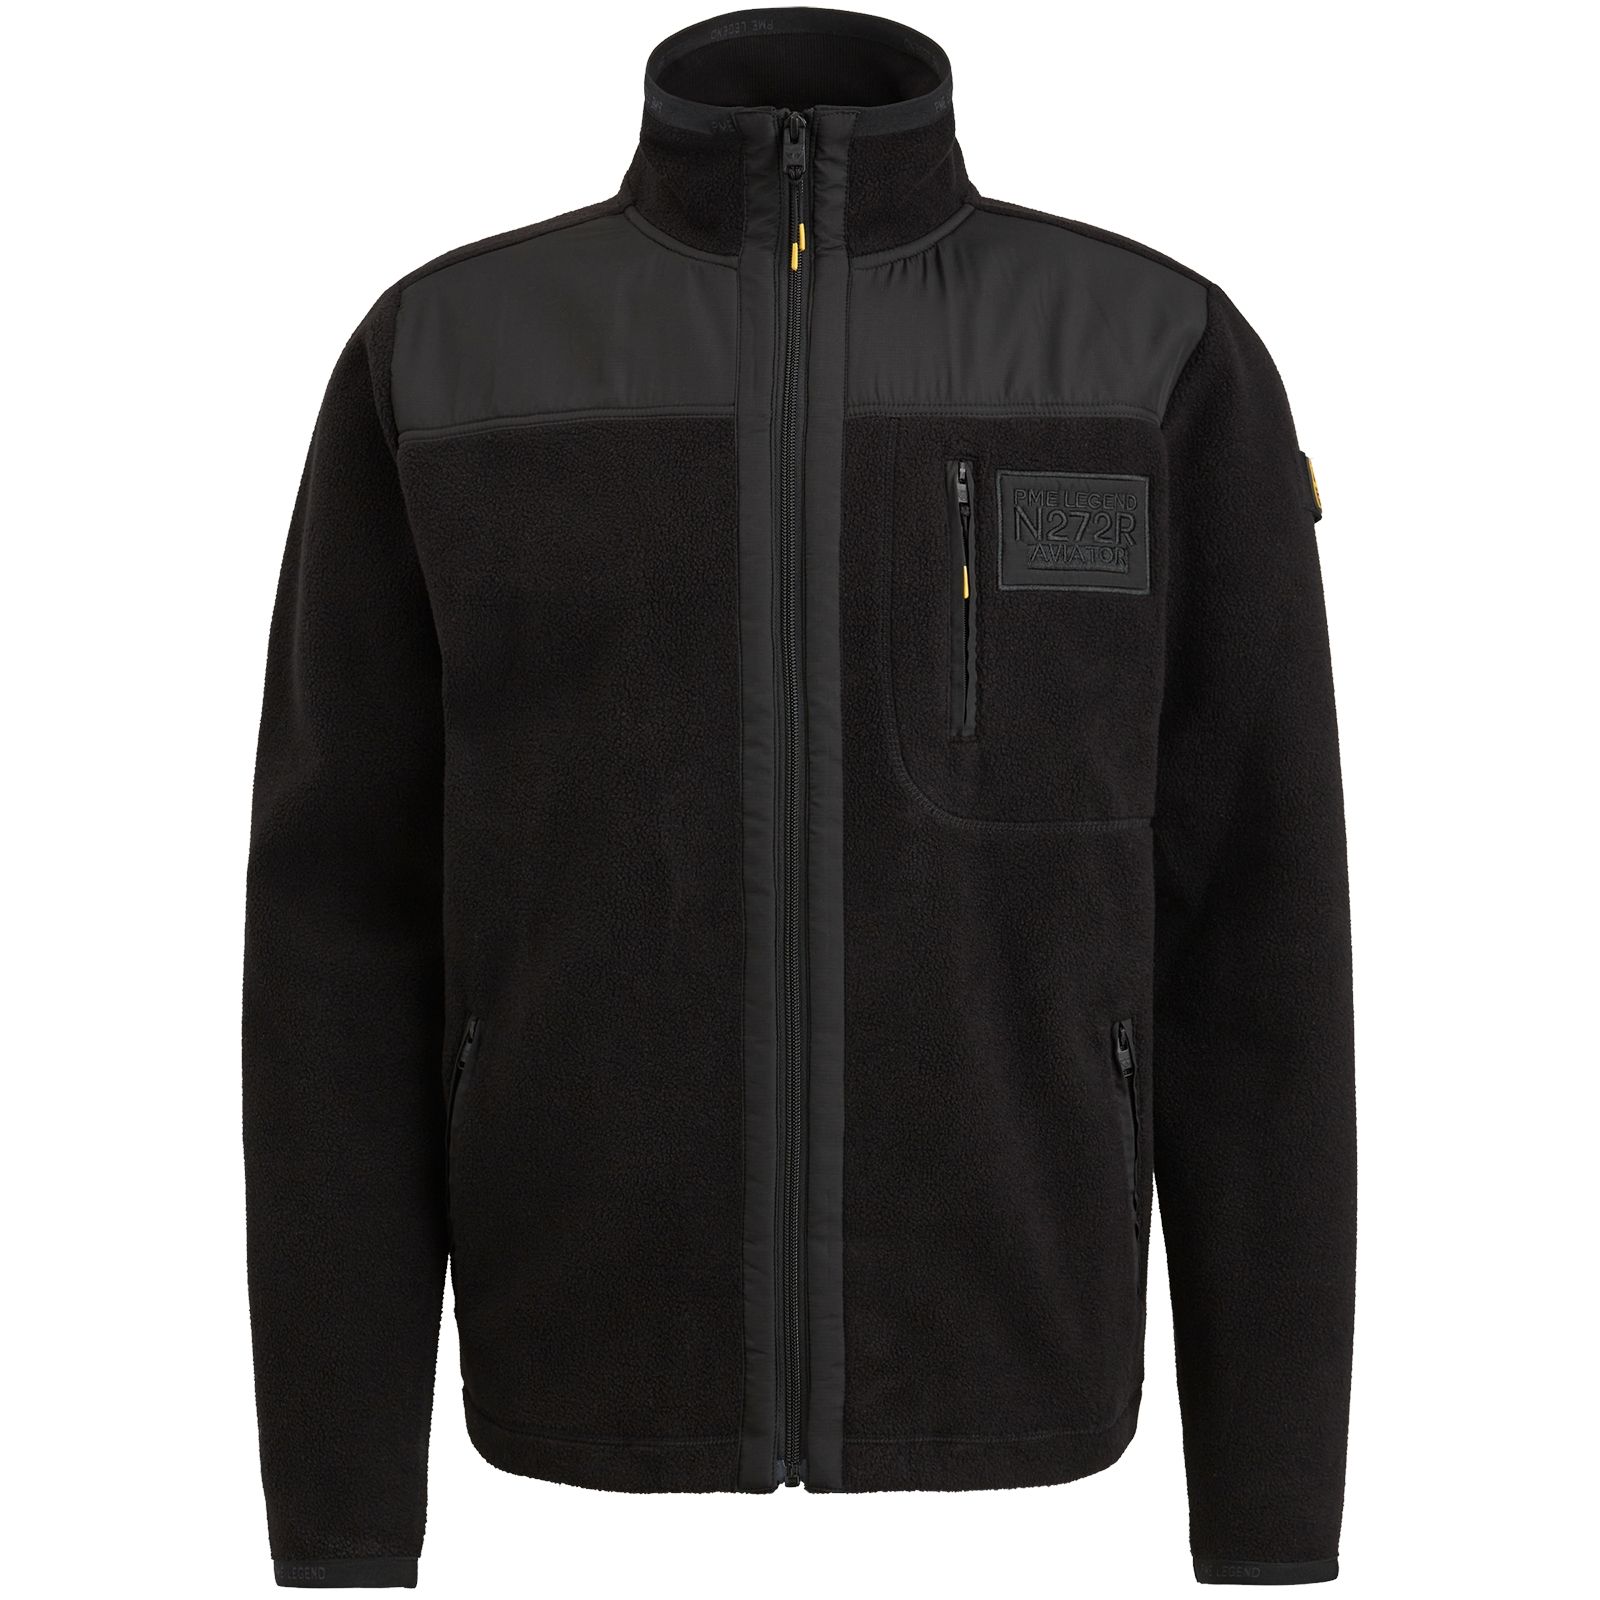 Pme Legend Zip jacket fleece Black 00105946-999